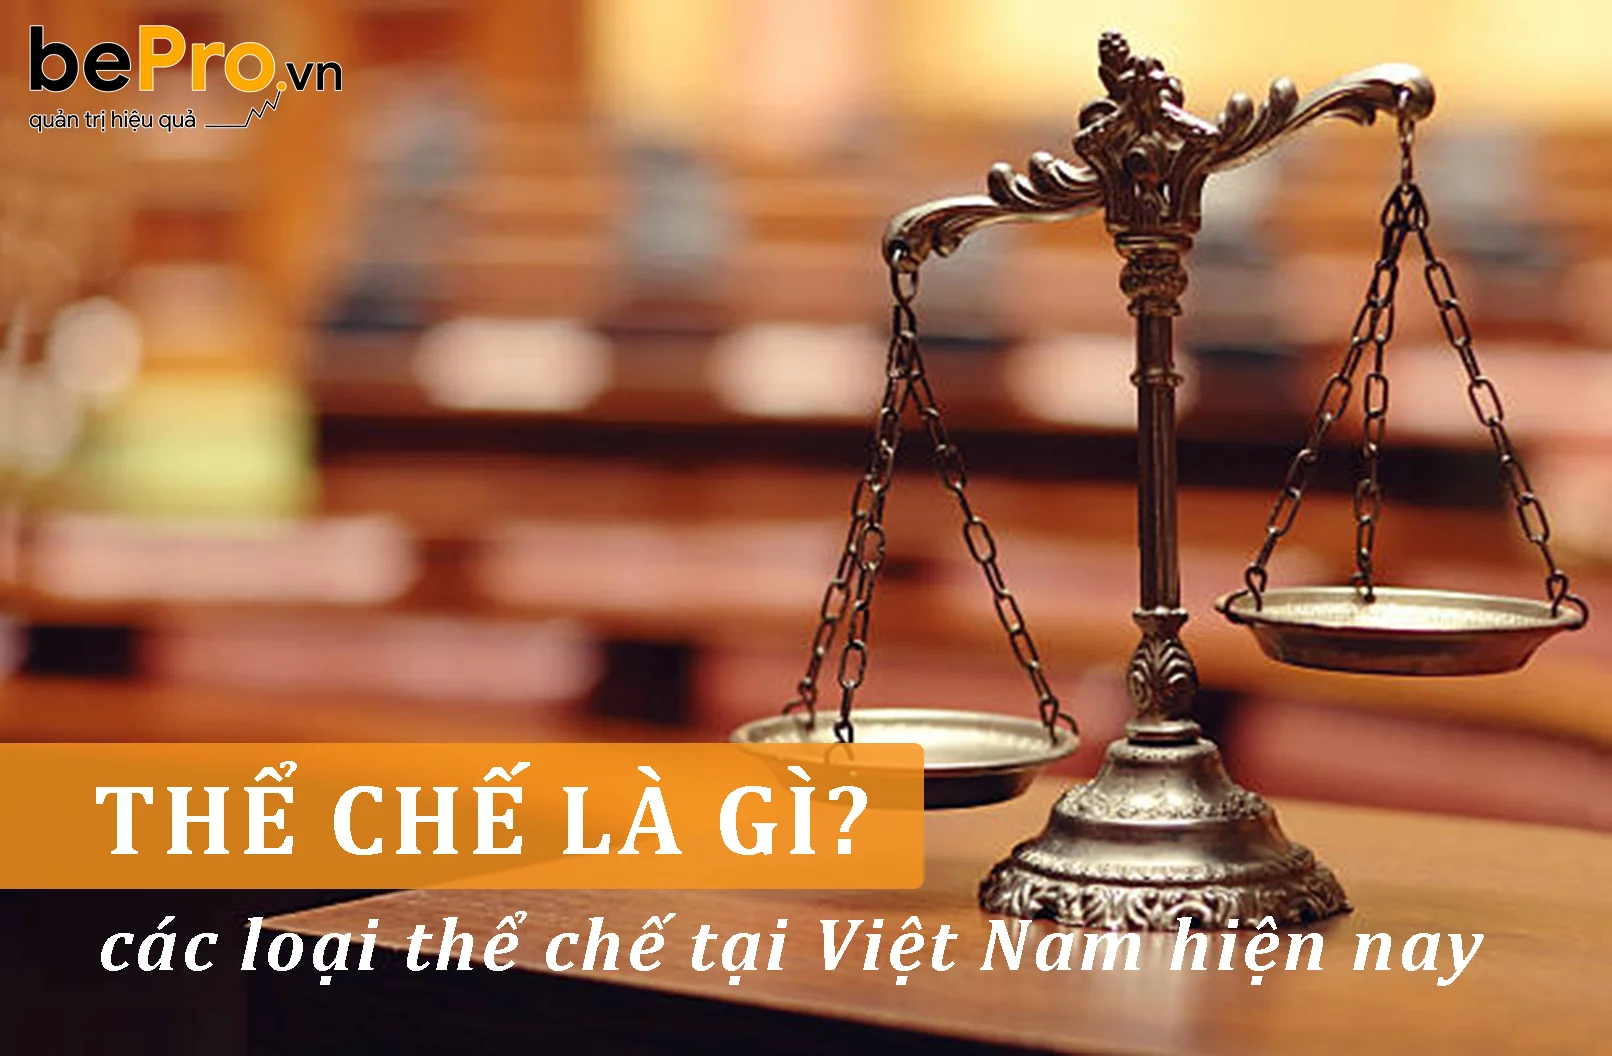 Thể chế là gì và các loại thể chế tại Việt Nam hiện nay